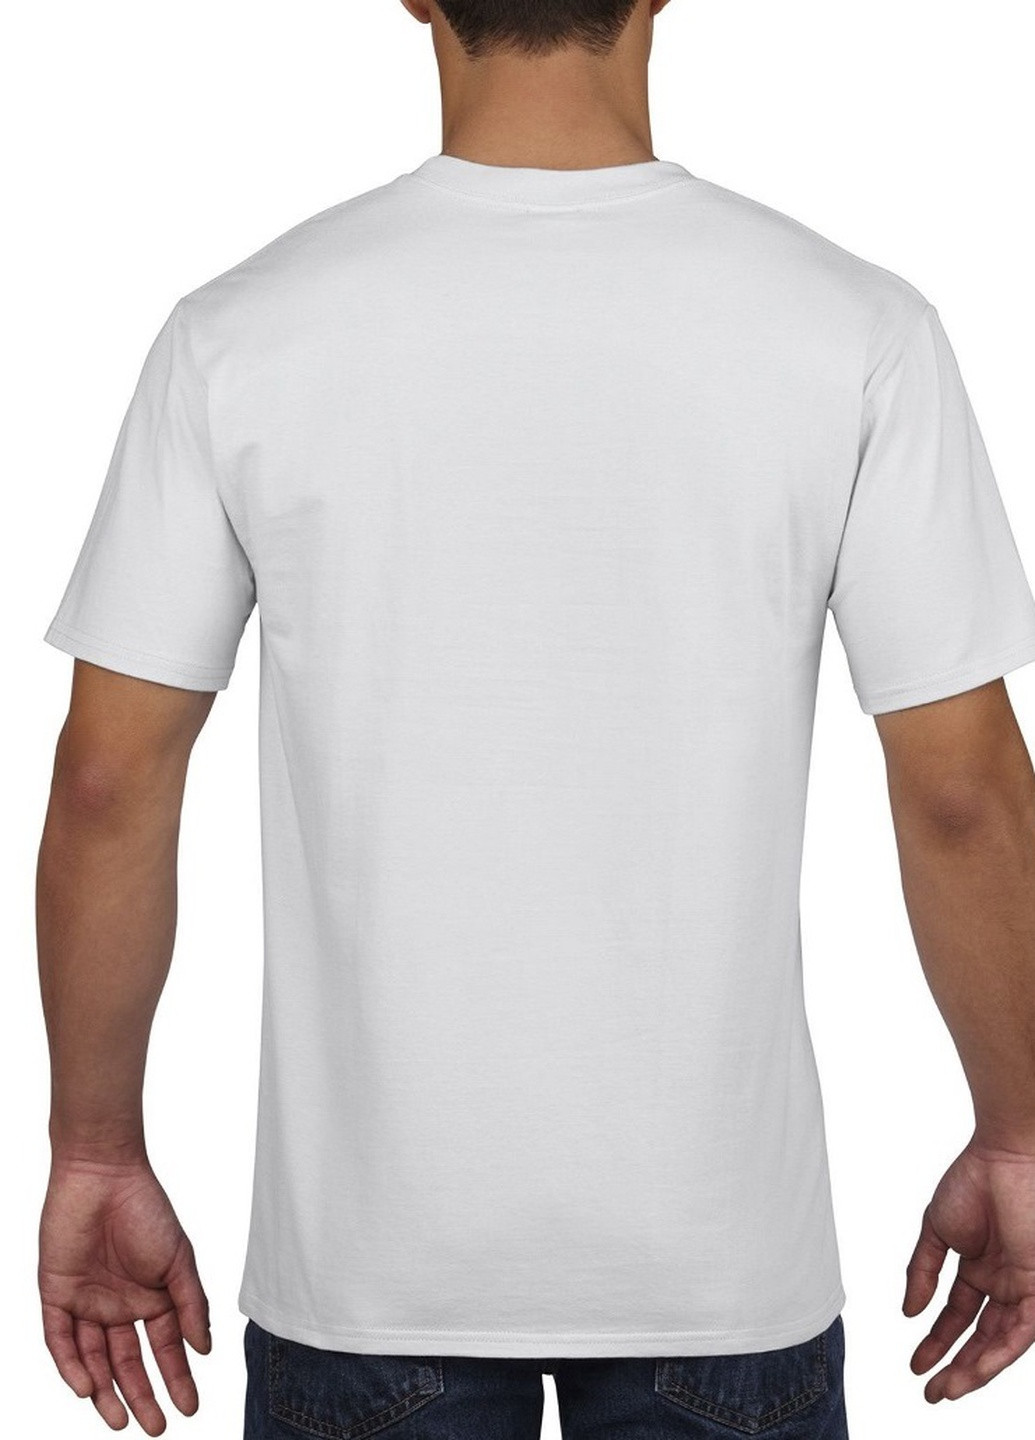 Біла футболка базова бавовняна біла Gildan Premium Cotton